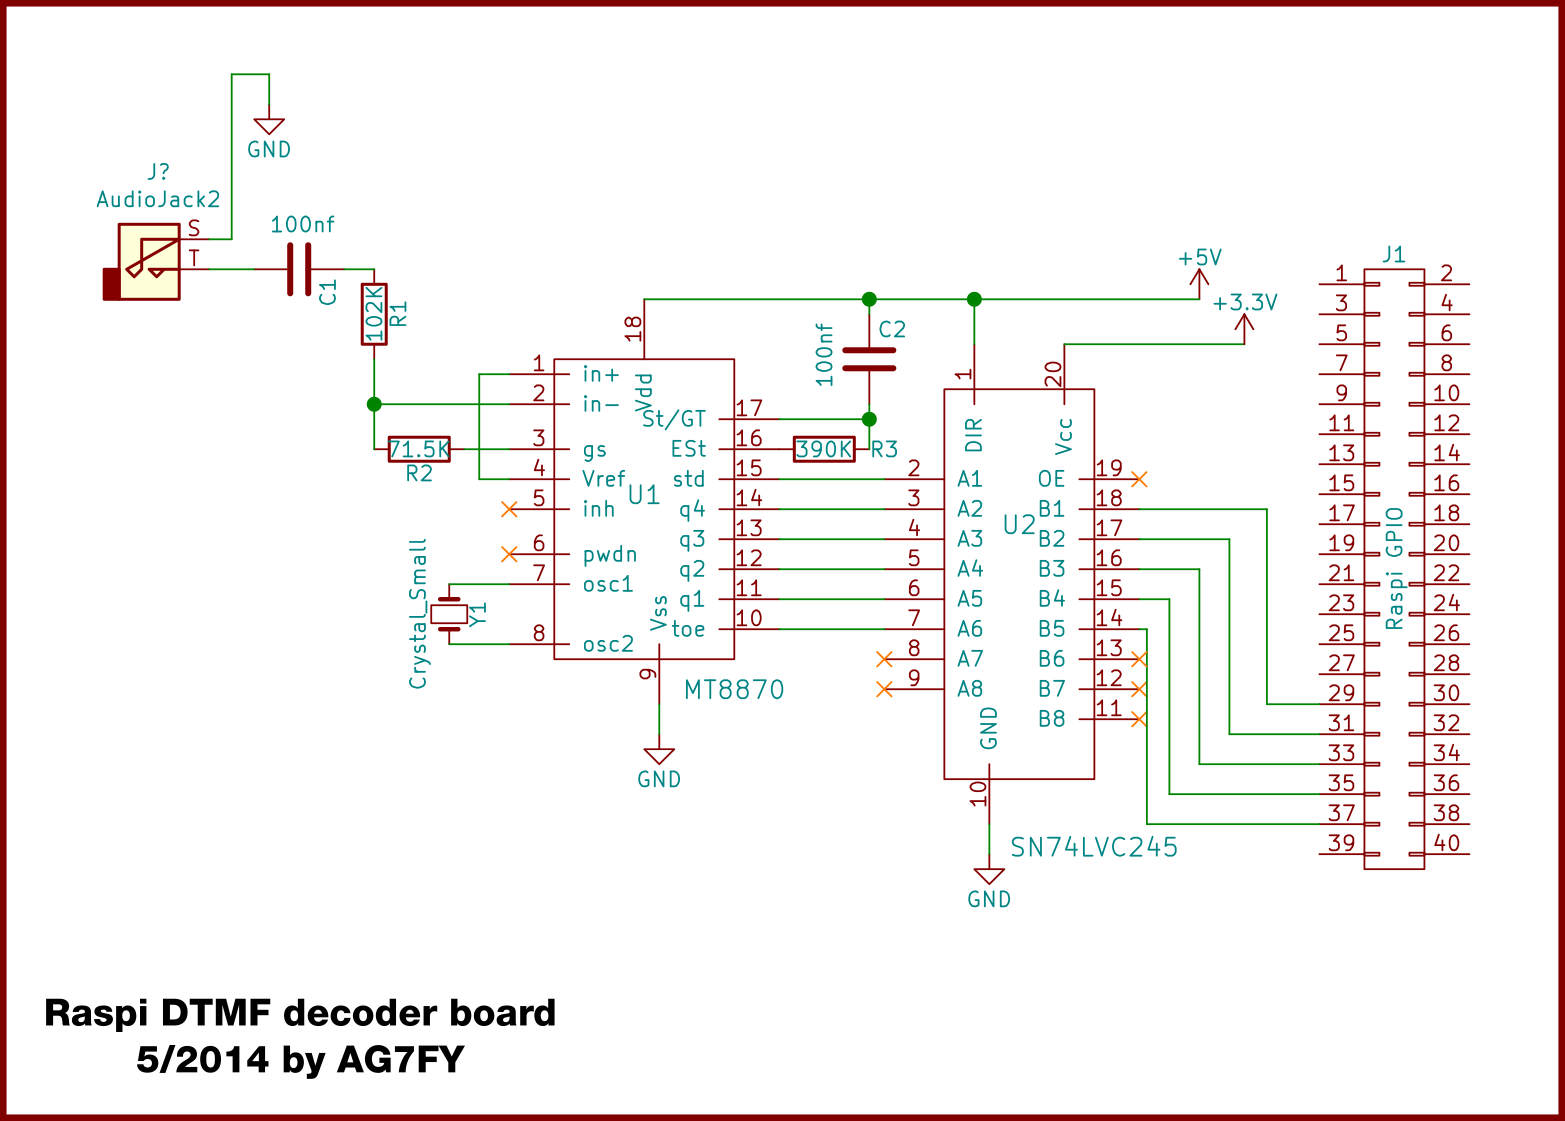 DTMF decoder schematic